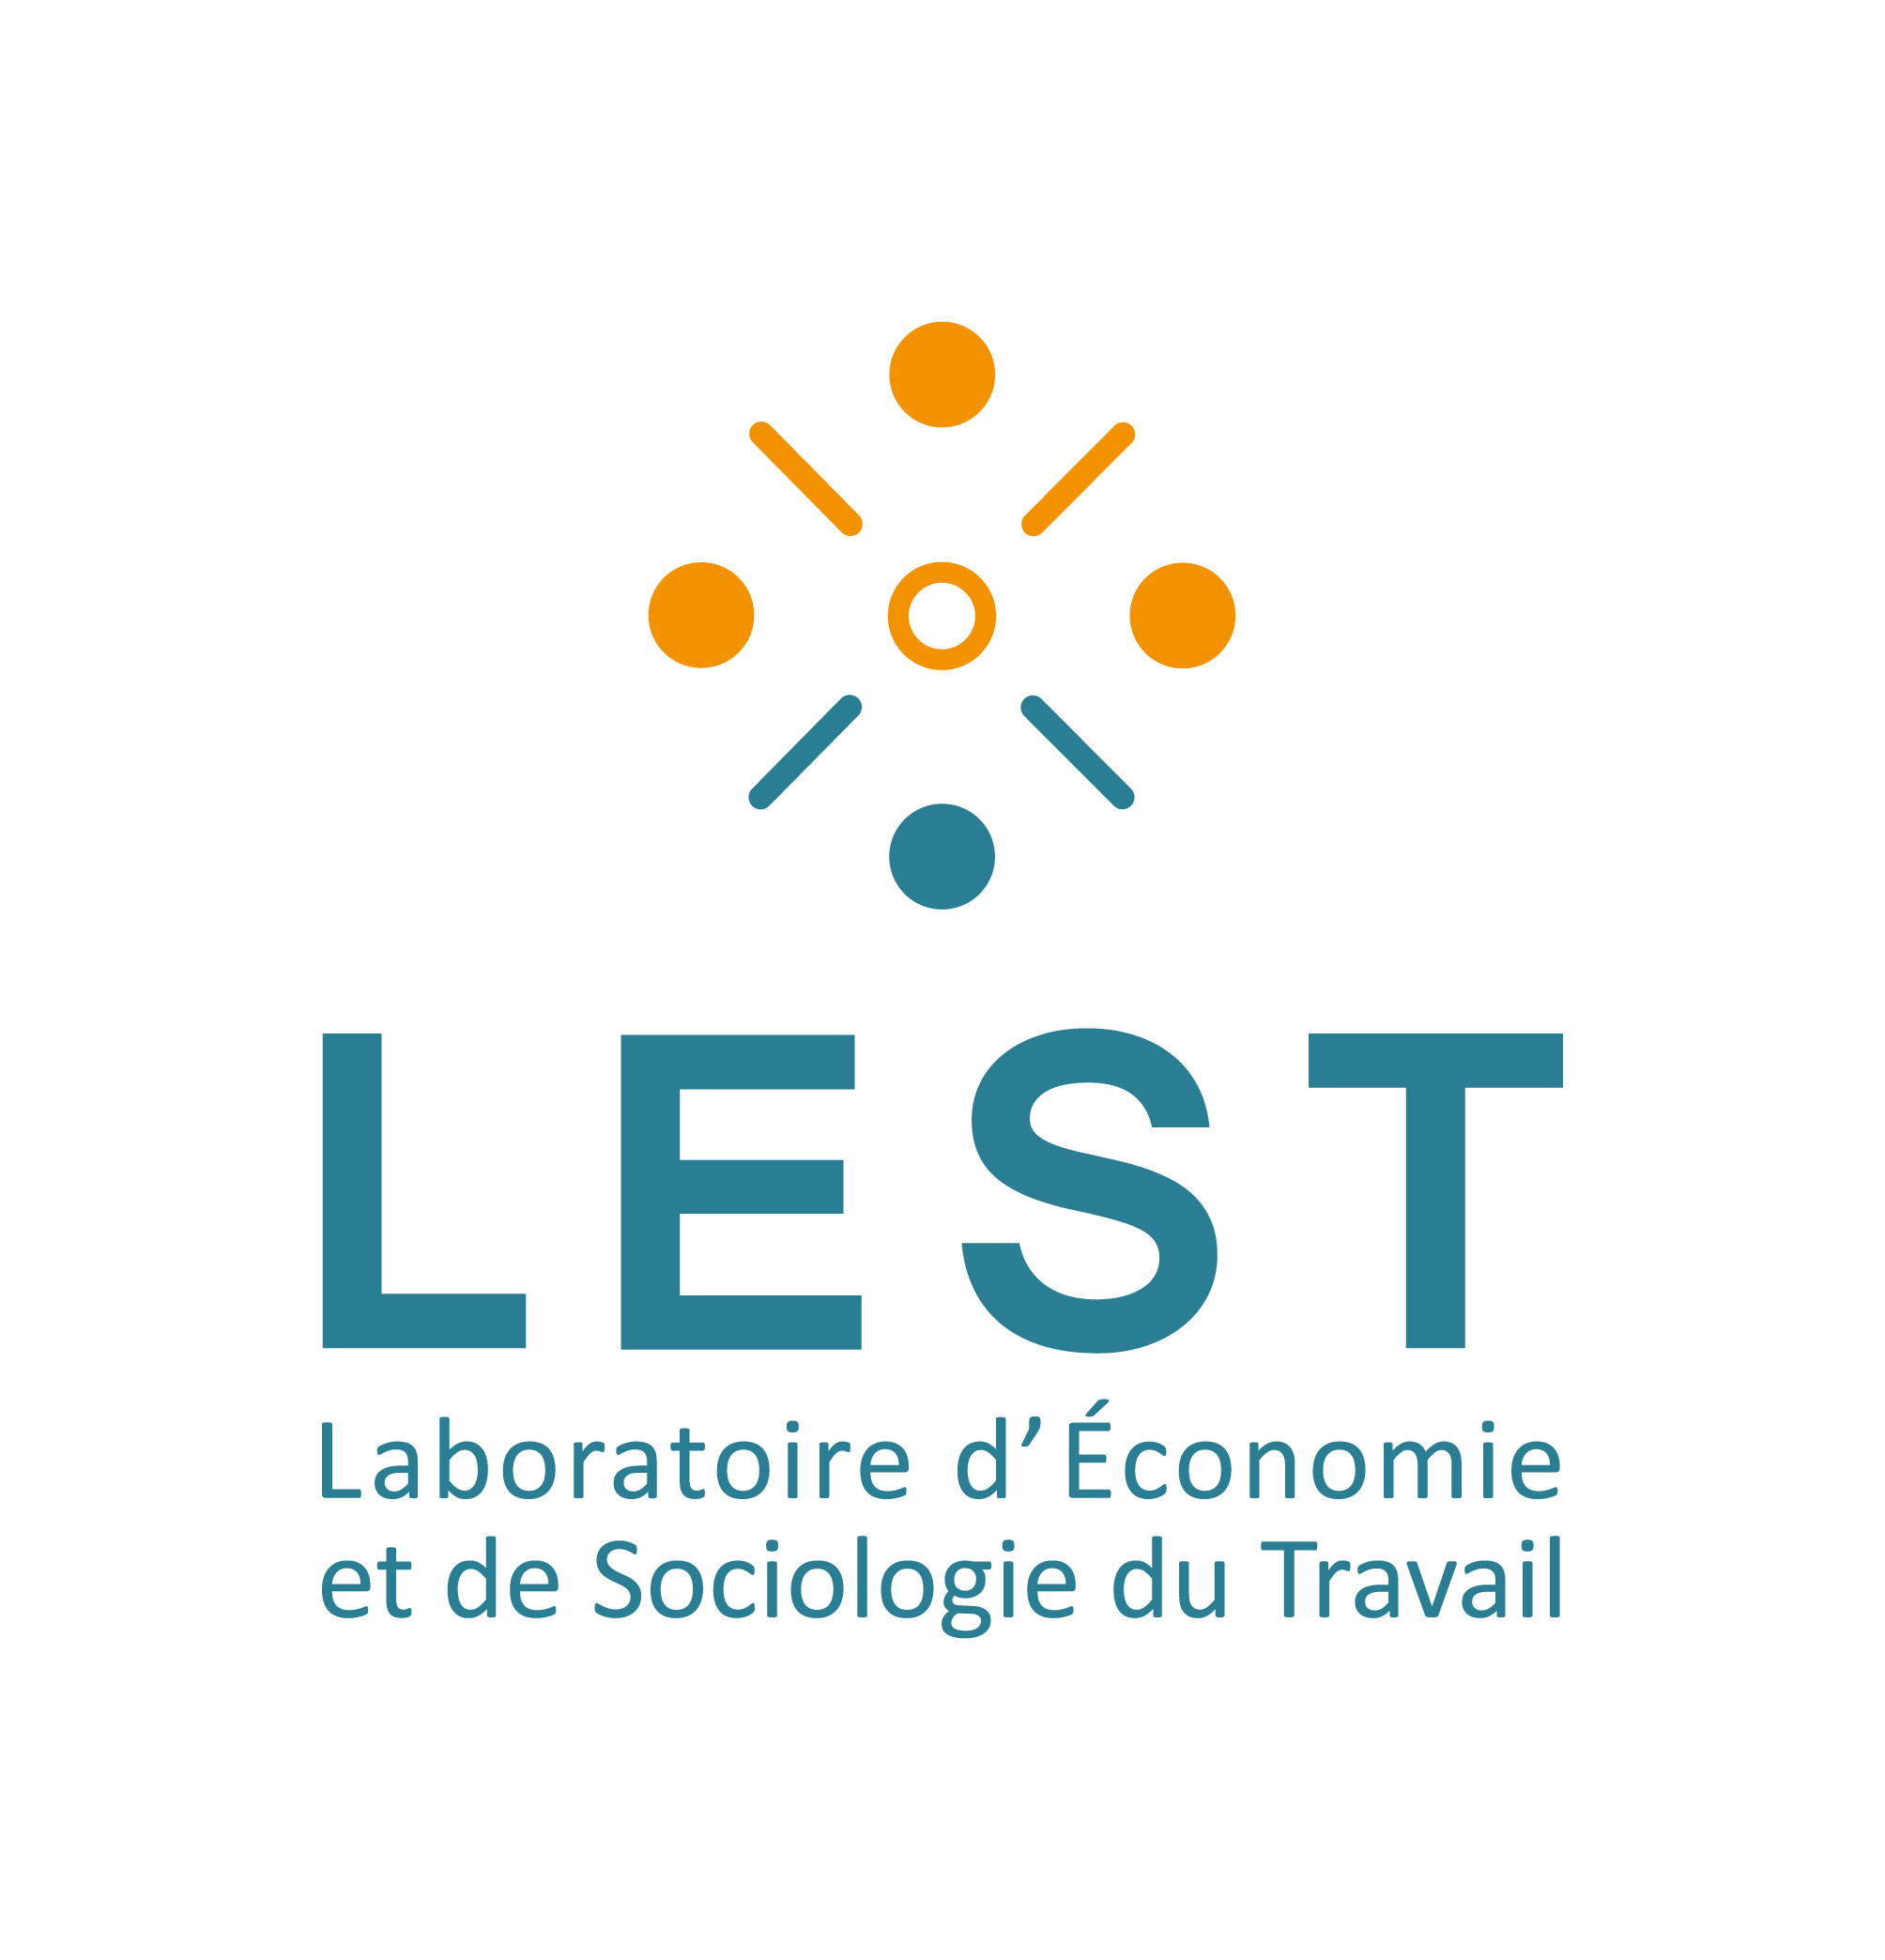 Laboratoire d'Economie et de Sociologie du Travail (LEST)